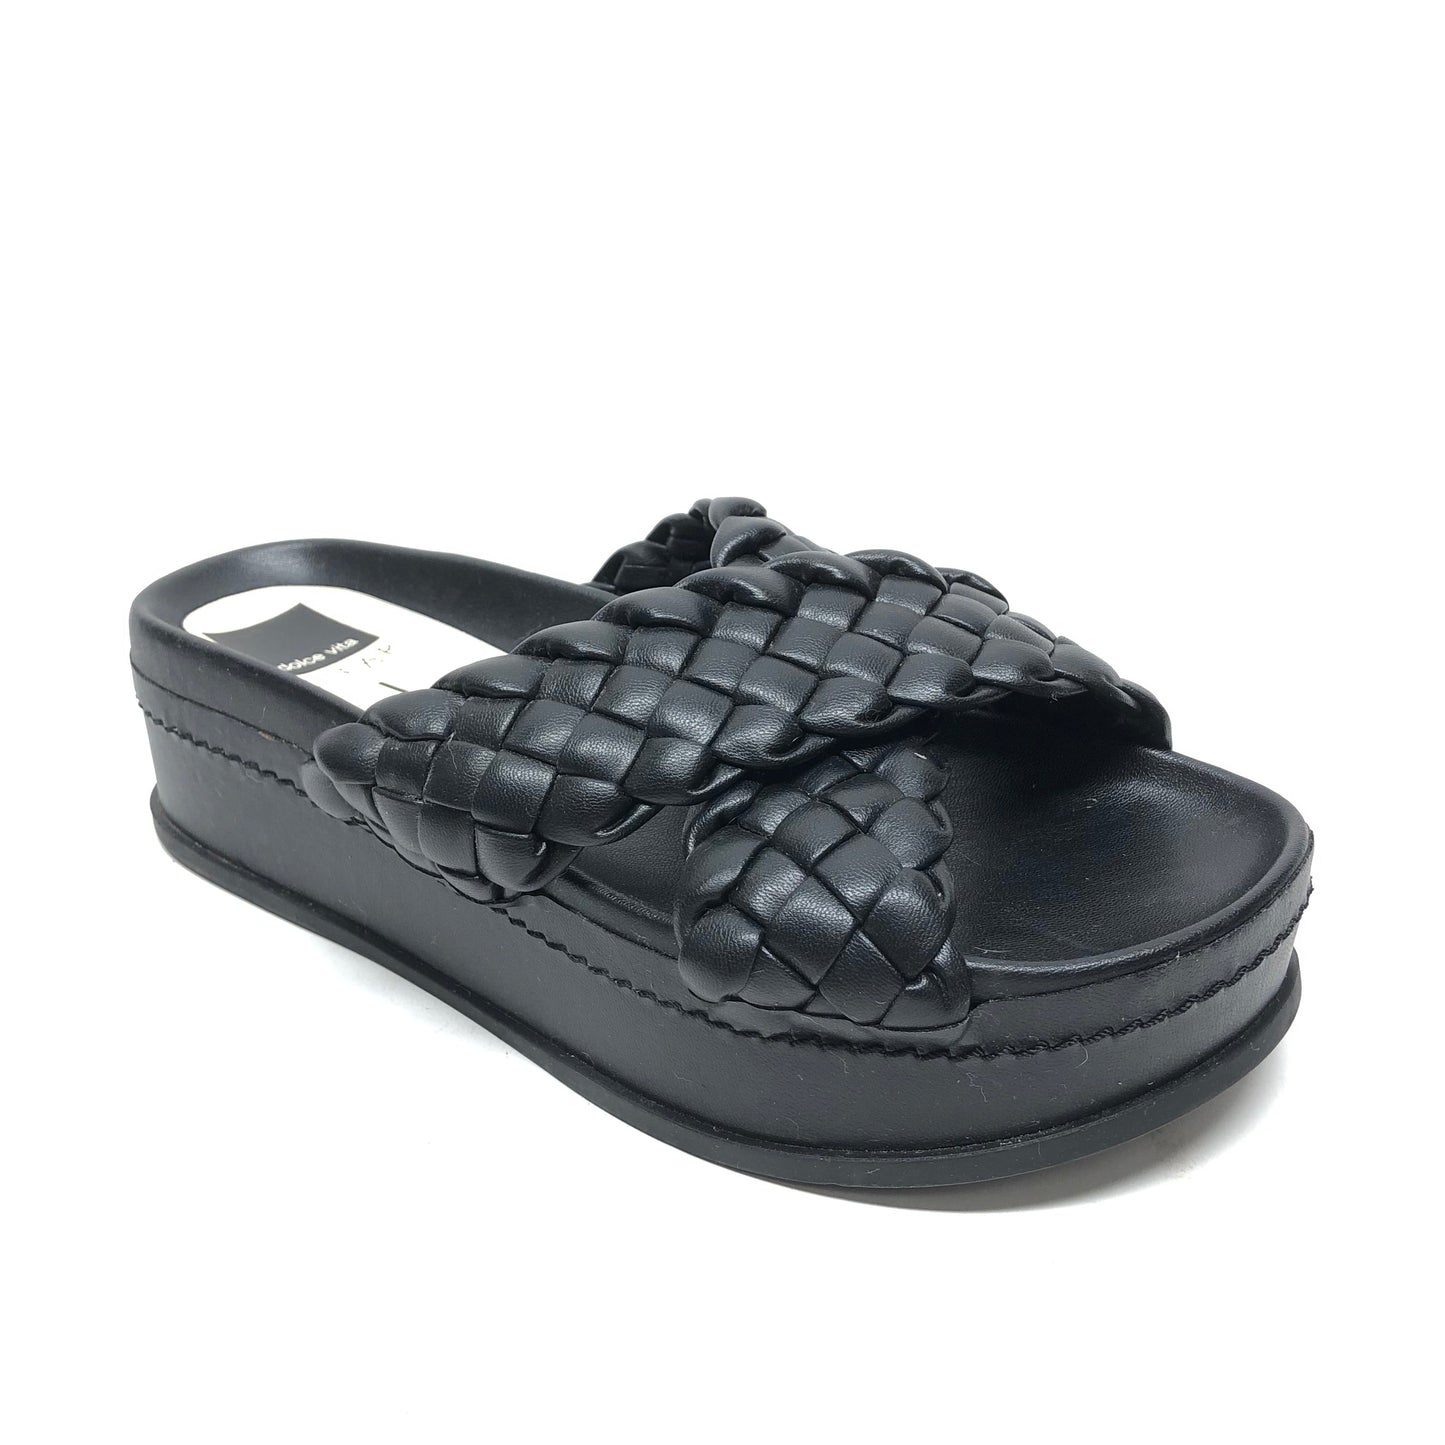 Black Sandals Heels Platform Dolce Vita, Size 9